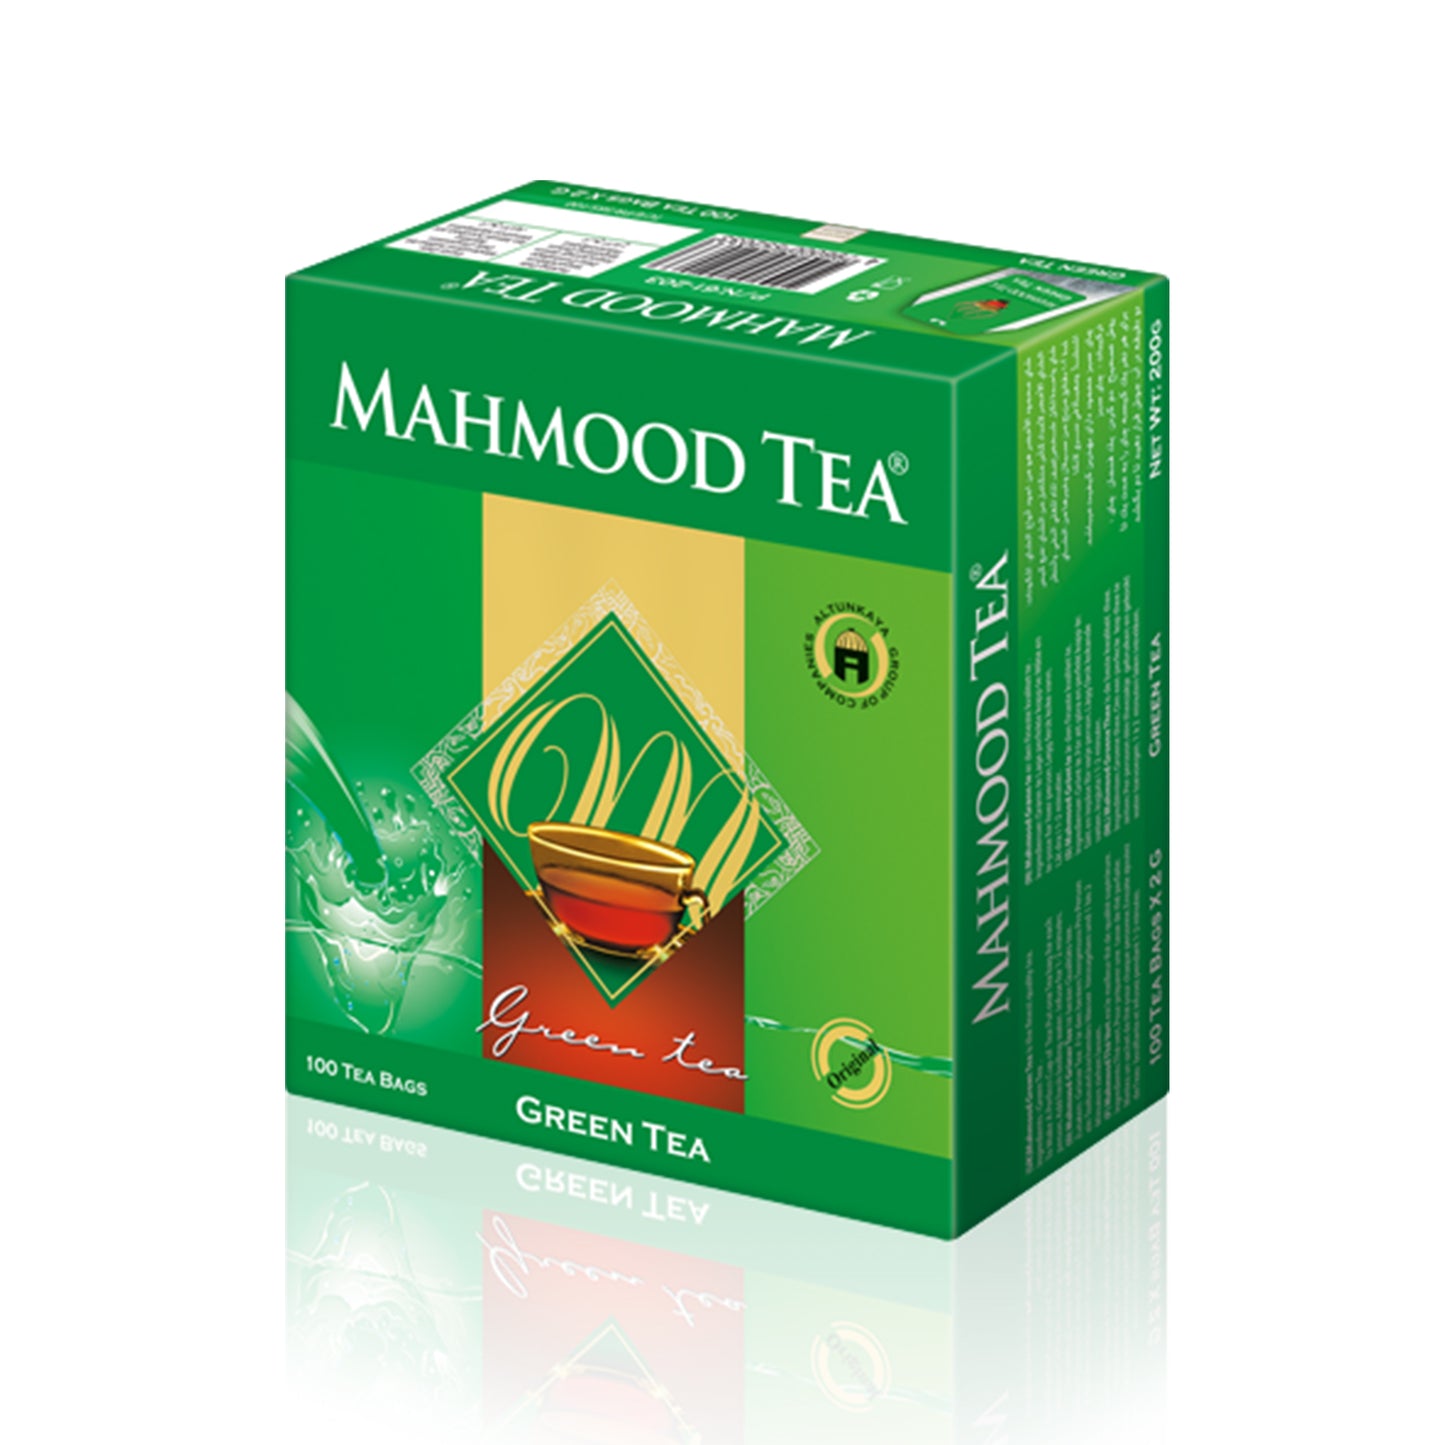 Mahmood Tea Green Tea 100 Bags